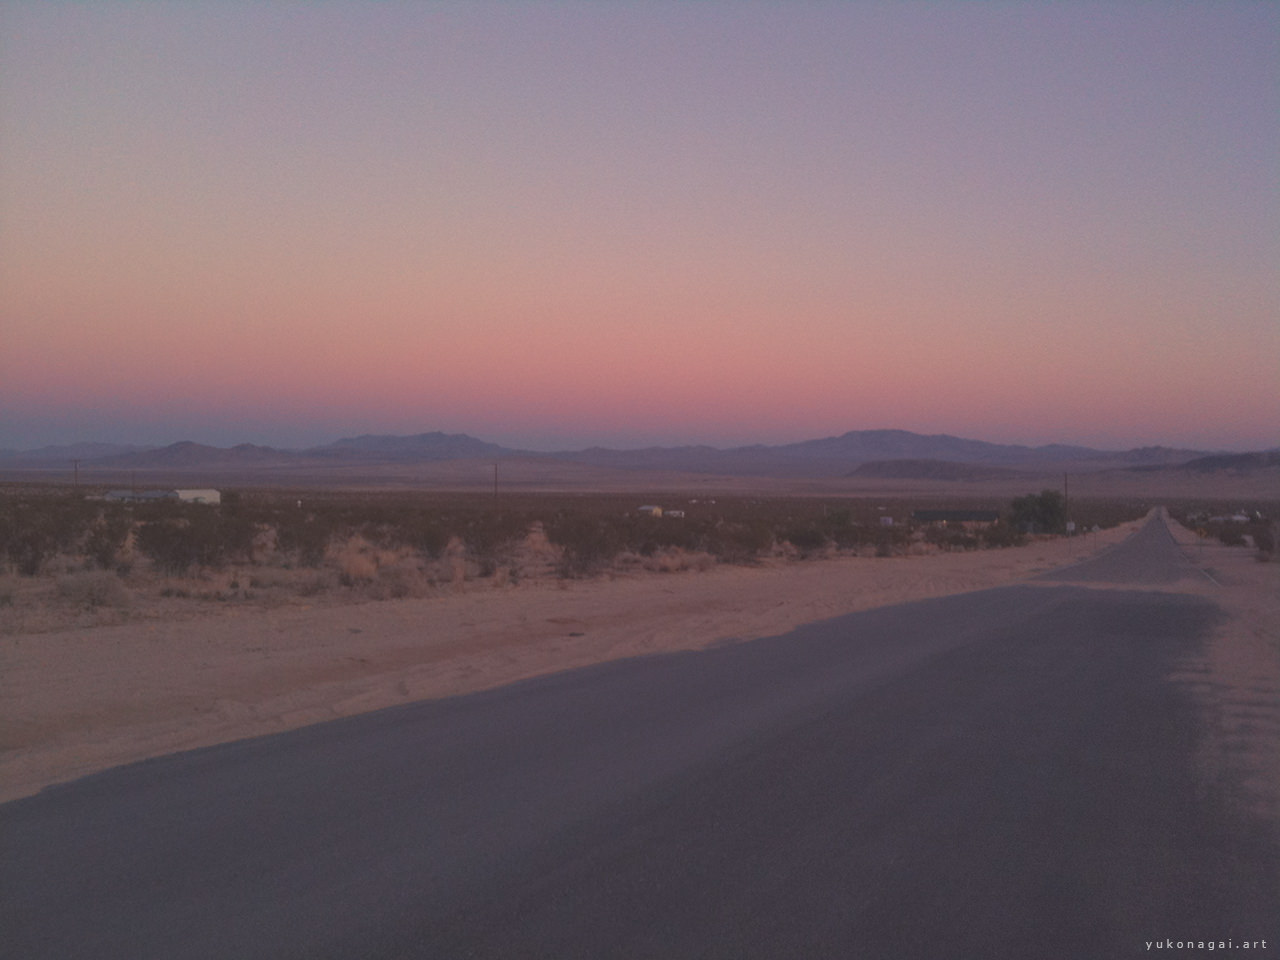 Day break at California desert.